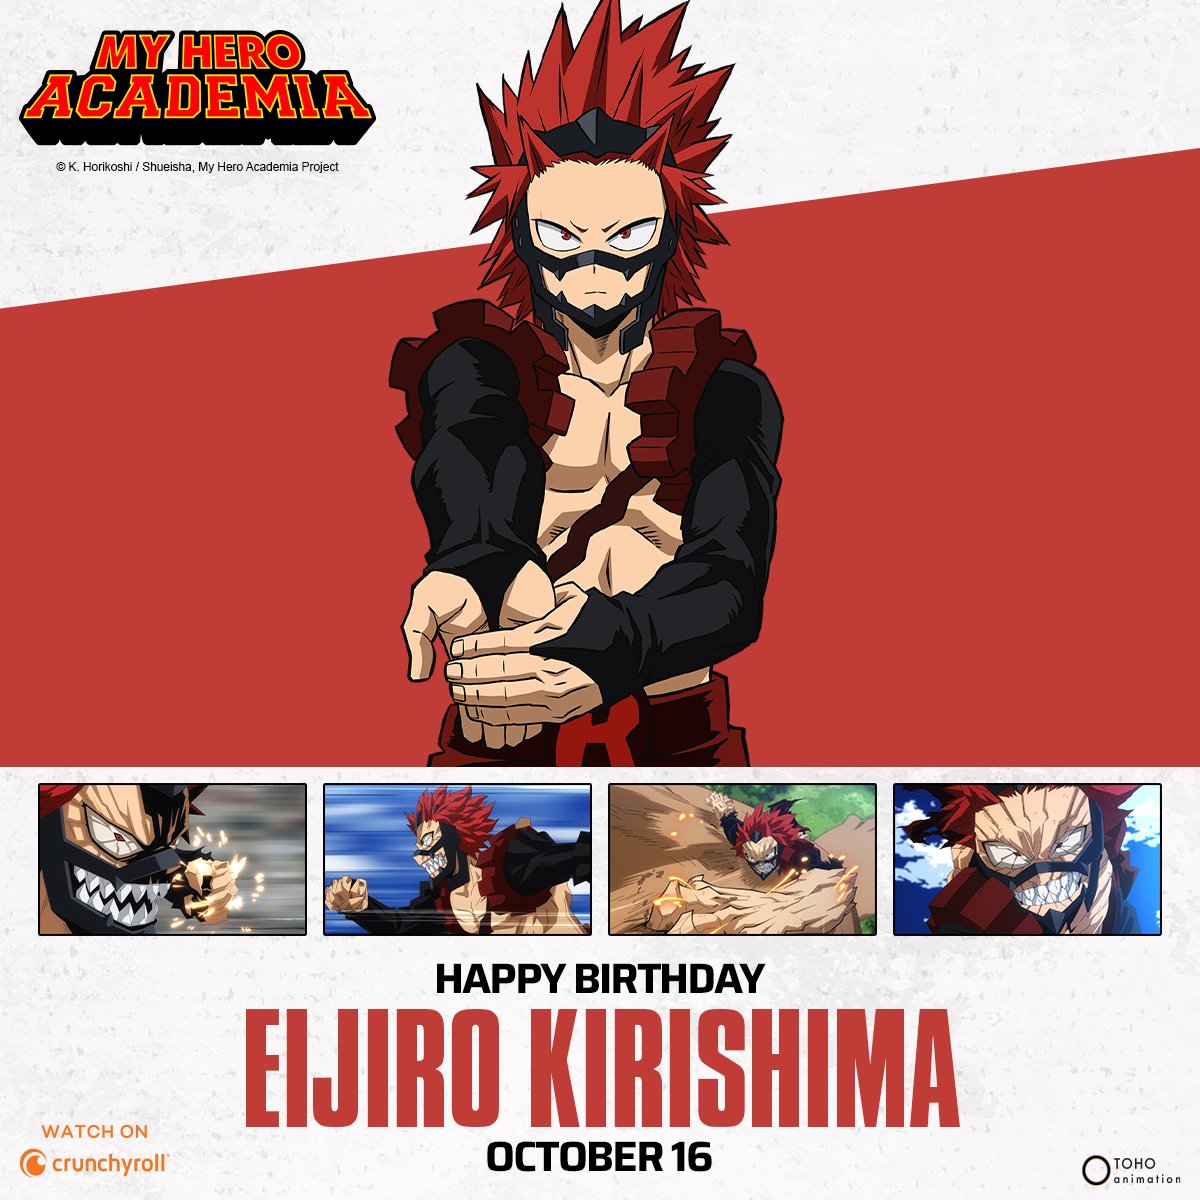 Happy birthday, Kirishima! ❤️